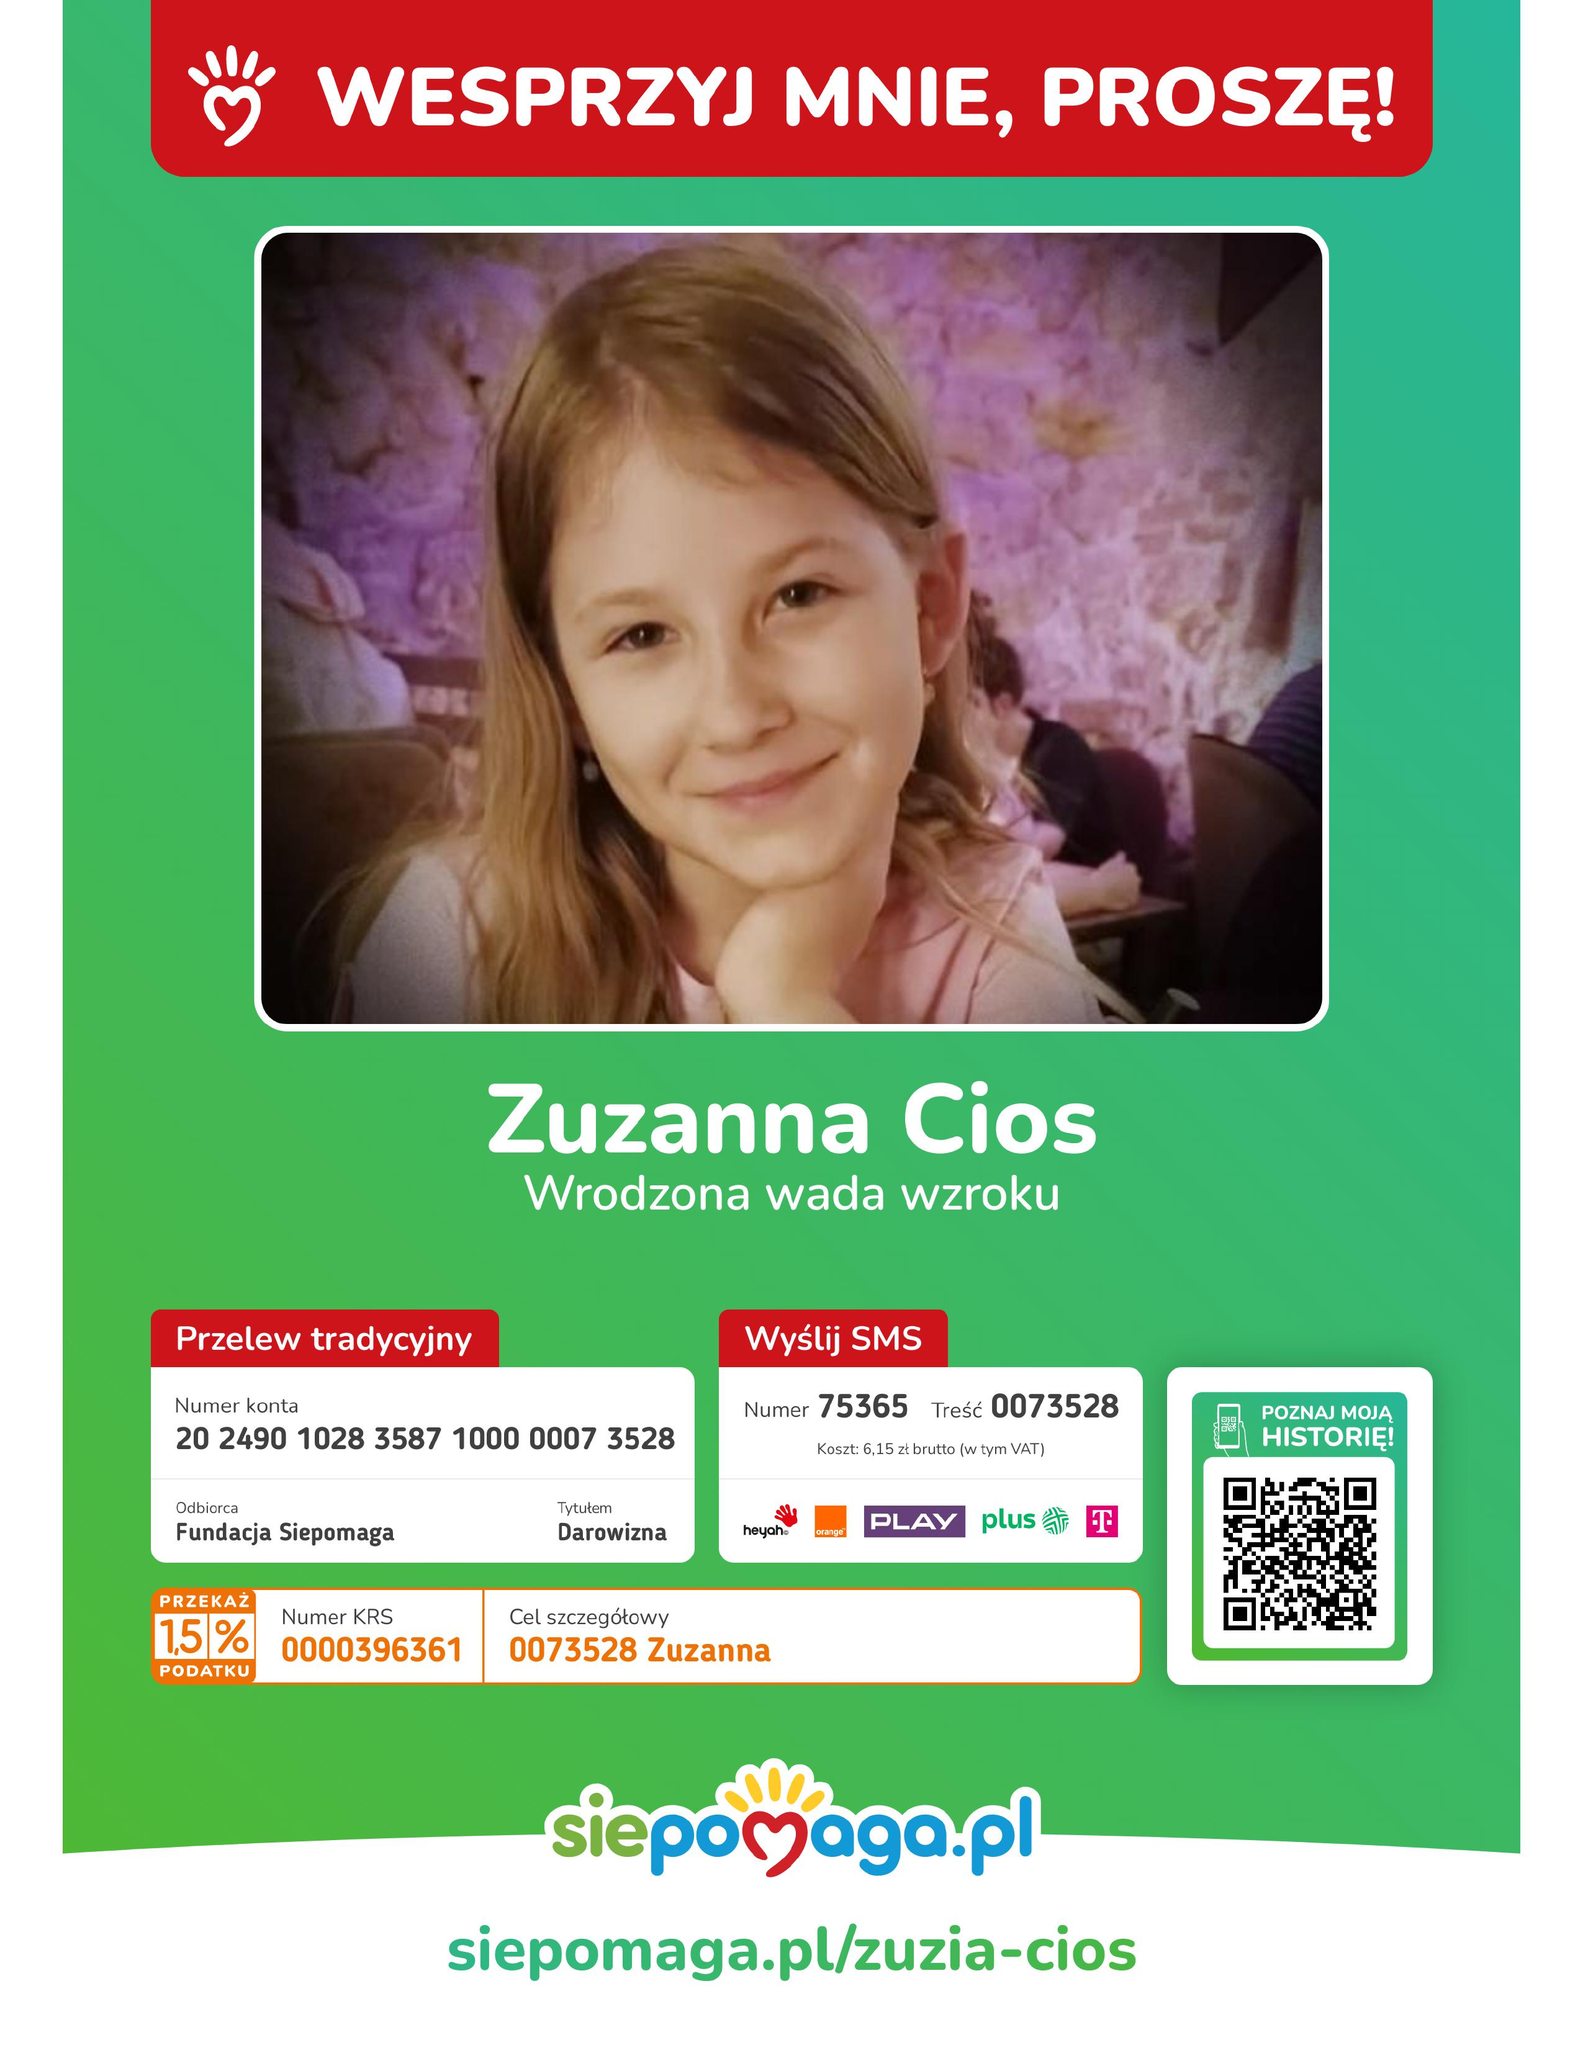 plakat przedstawia dziewczynkę, jest na zielonym tle, na plakacie znajdują się informację o możliwości wsparcia.